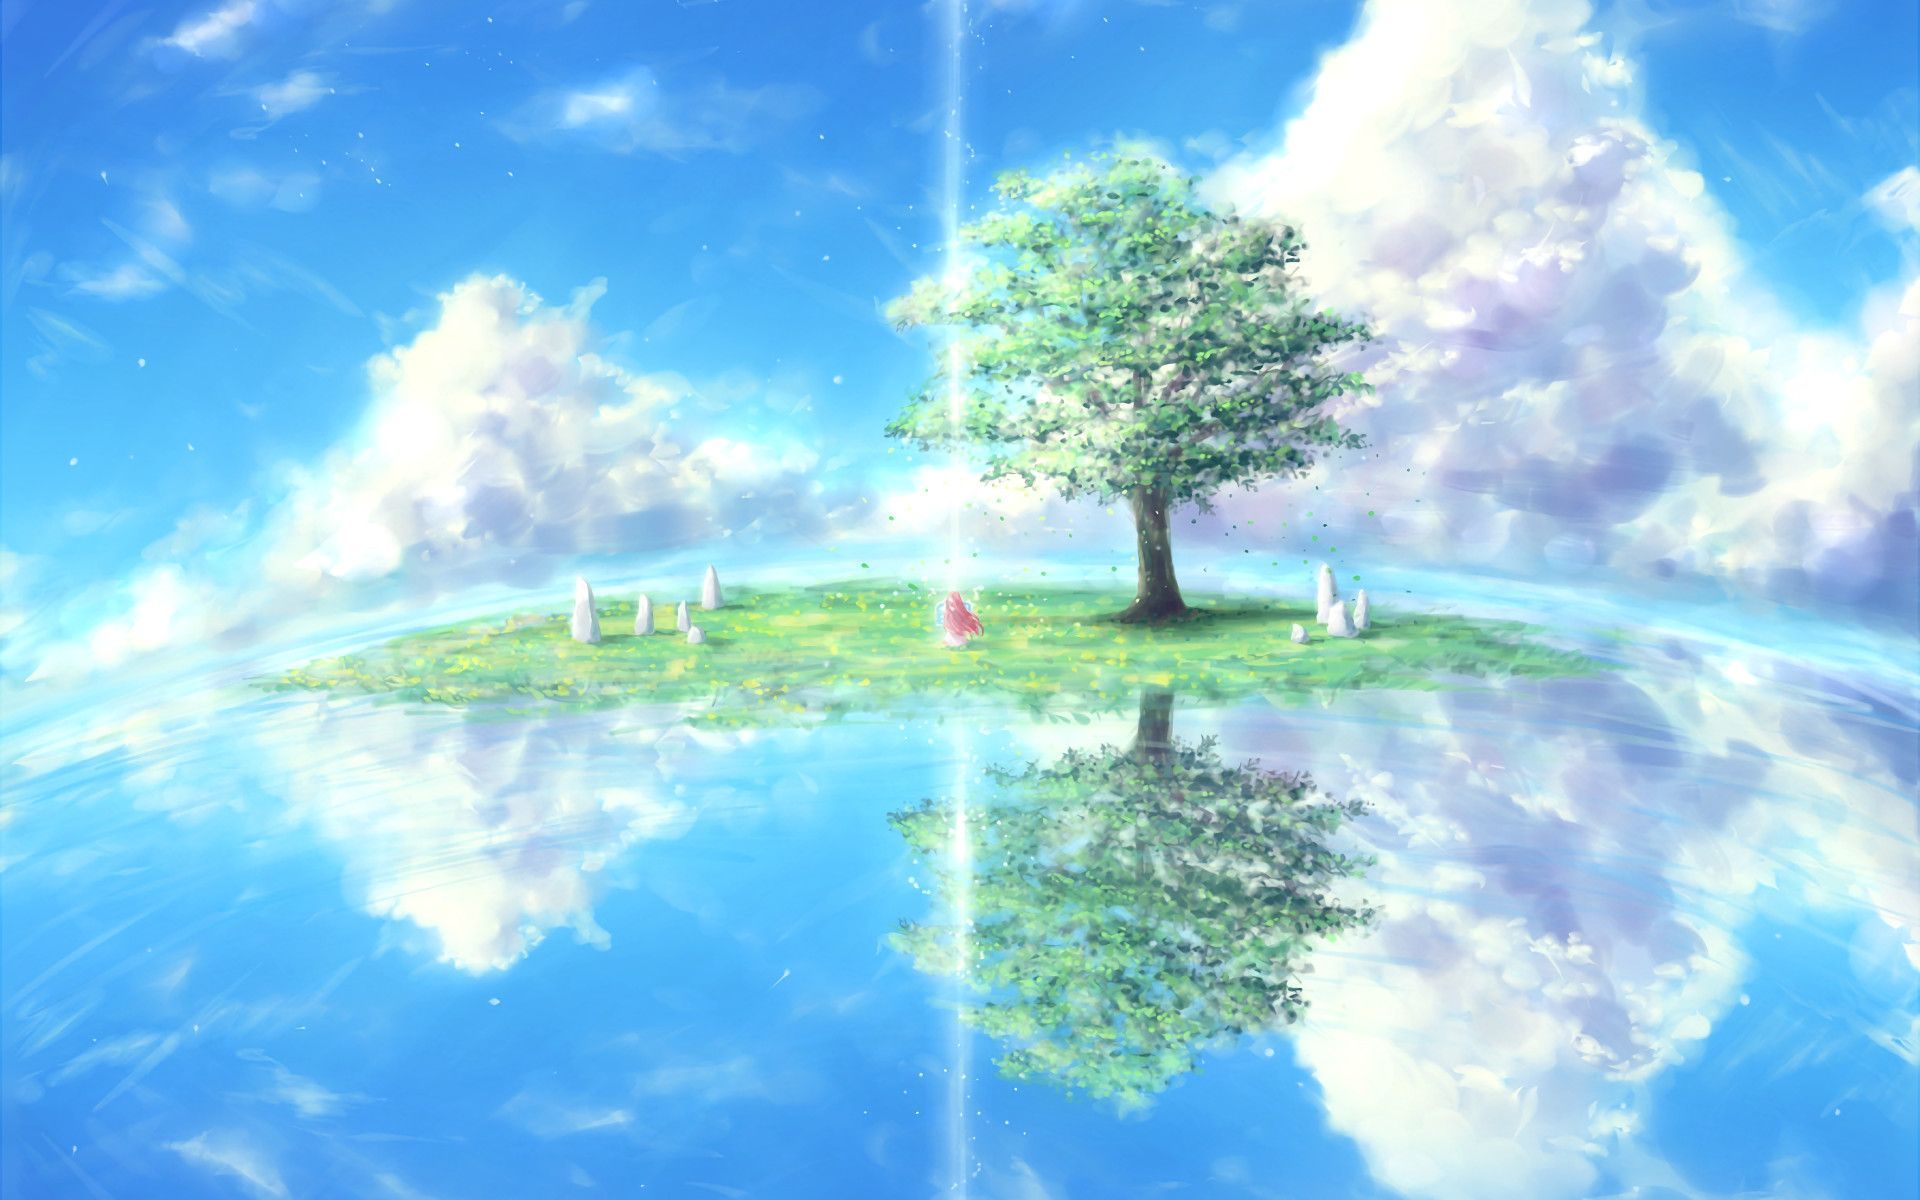 Anime Nature Background Image